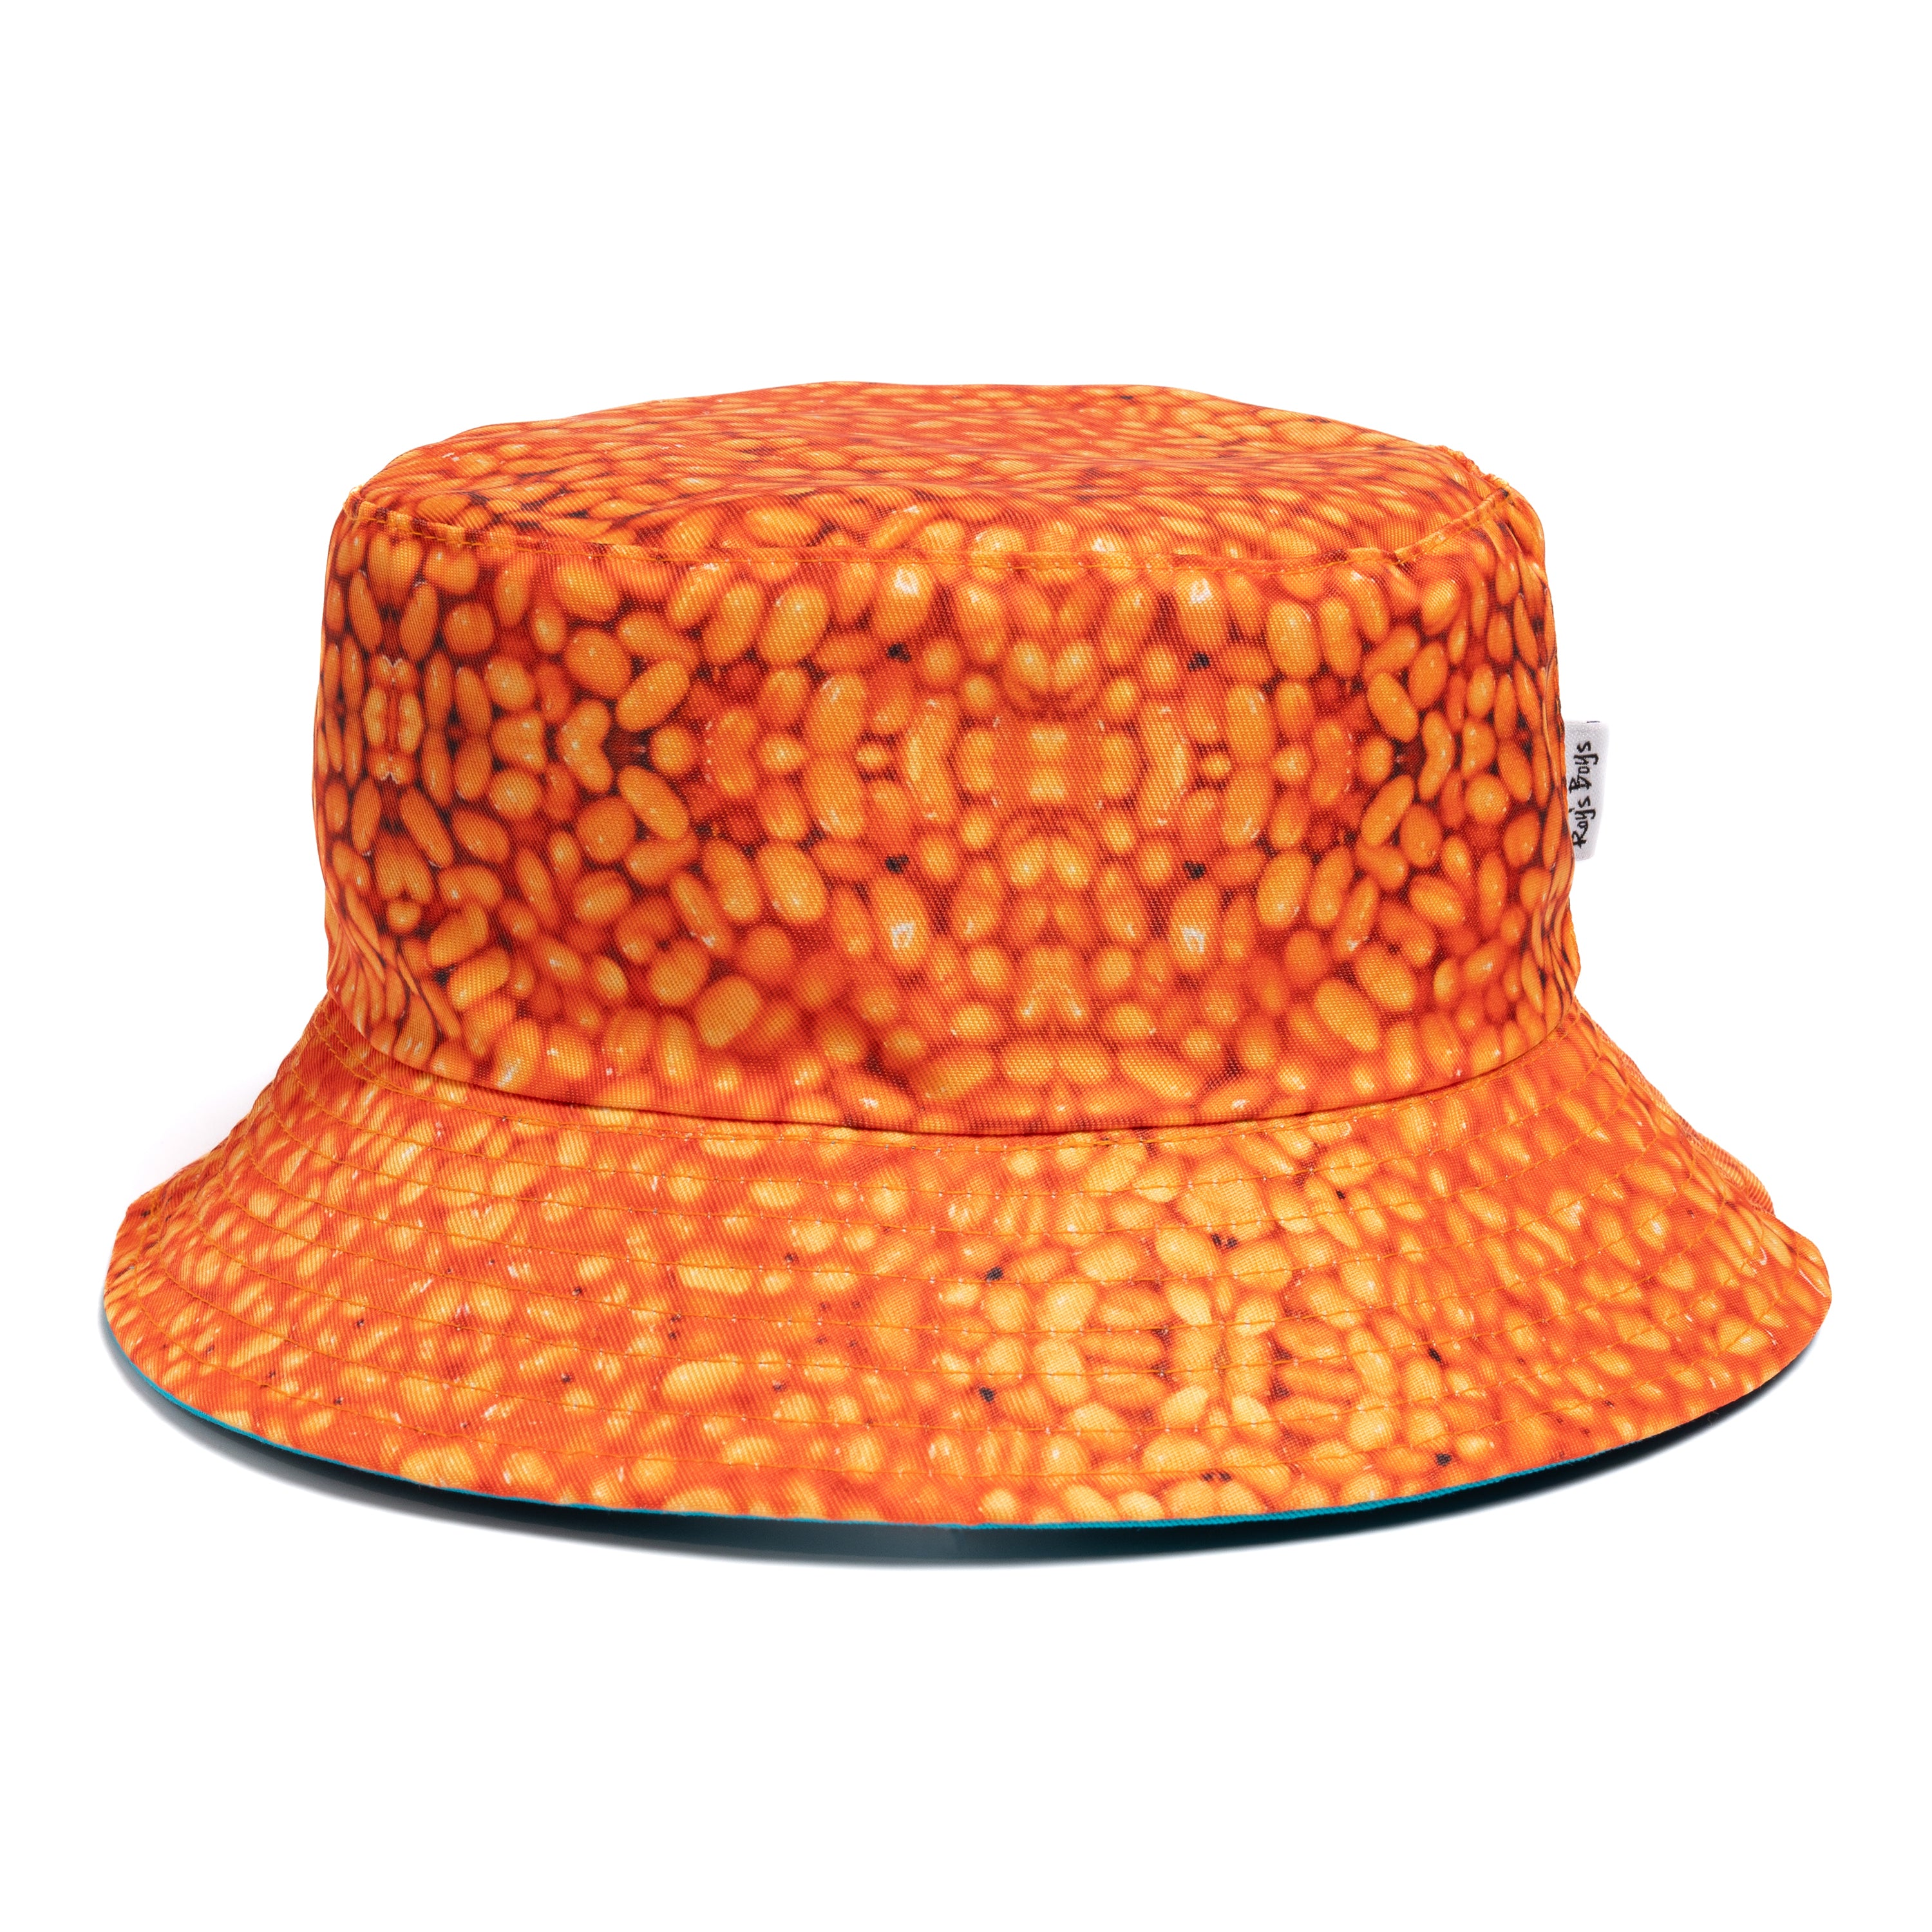 Big Bean Adult Reversible Bucket Hat